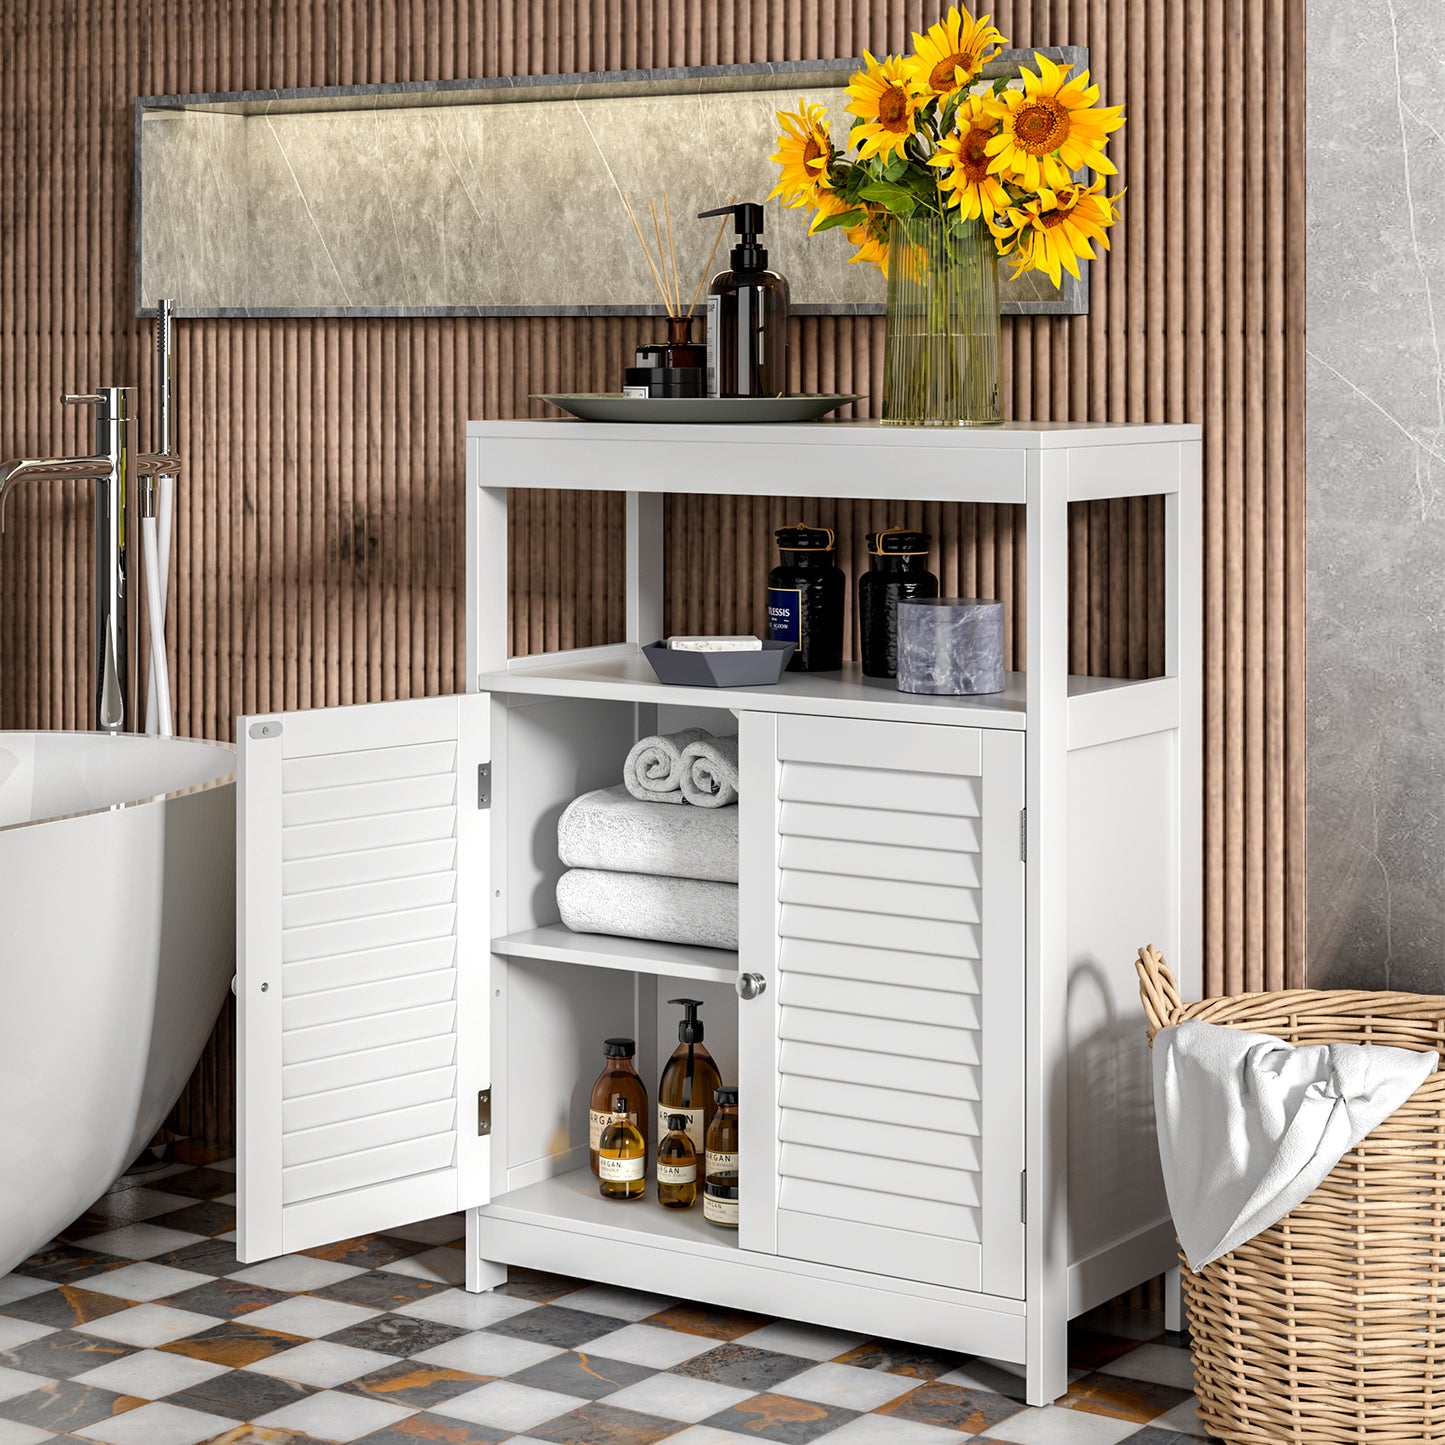 Freestanding Bathroom Floor Cabinet with Double Shutter Doors-White